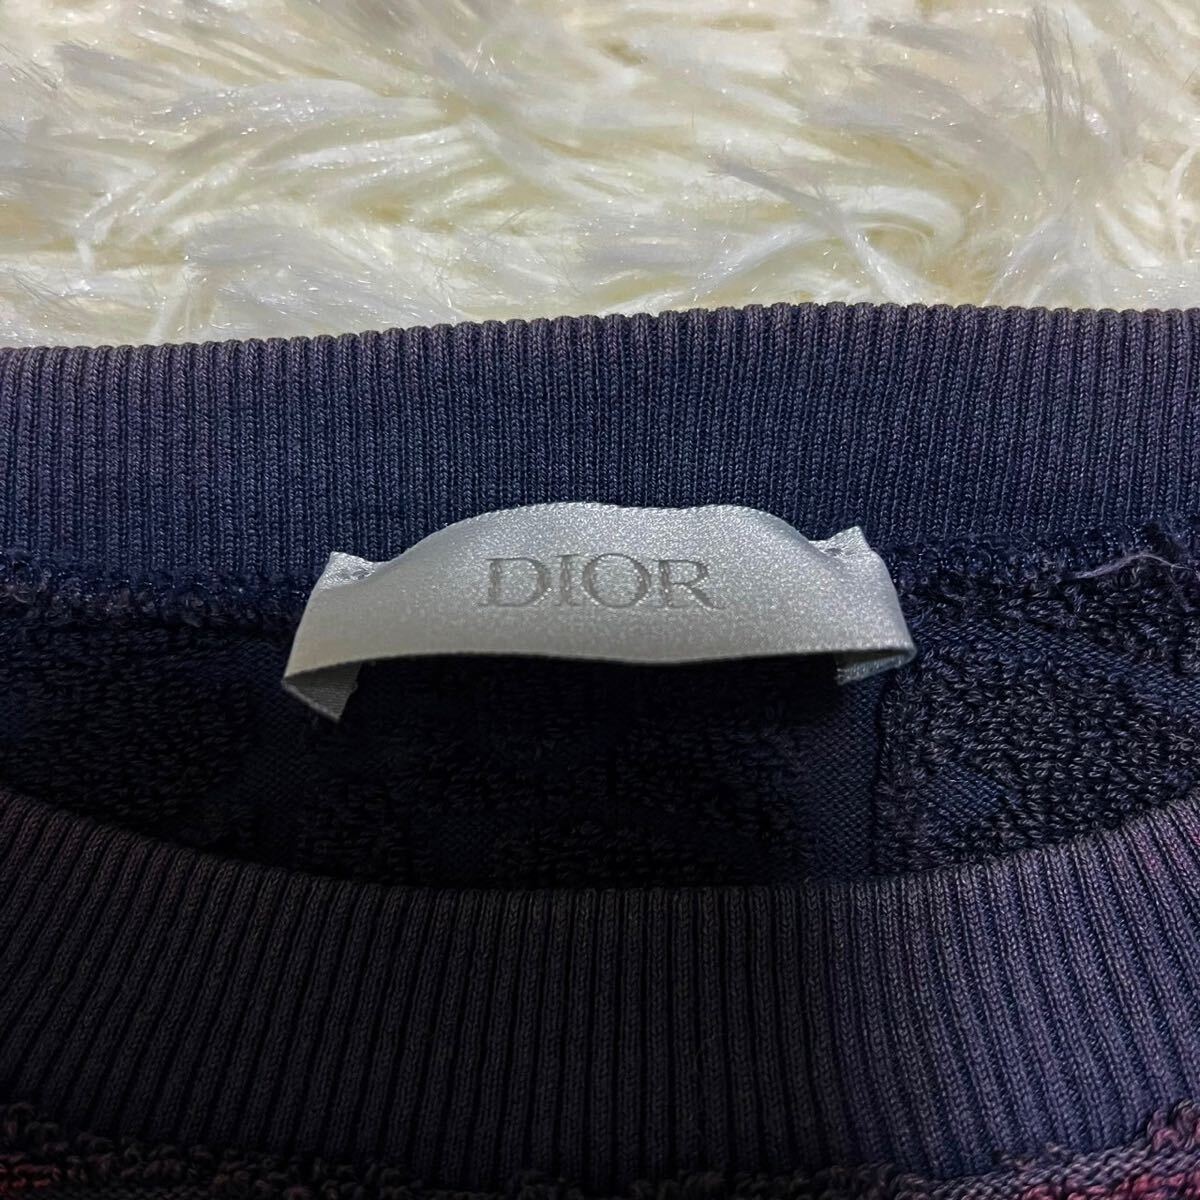 ディオールオム 【大人気デザイン】 Dior Homme 半袖 Tシャツ カットソー トップス オブリーク トロッター ロゴ メンズ ネイビー サイズS_画像5